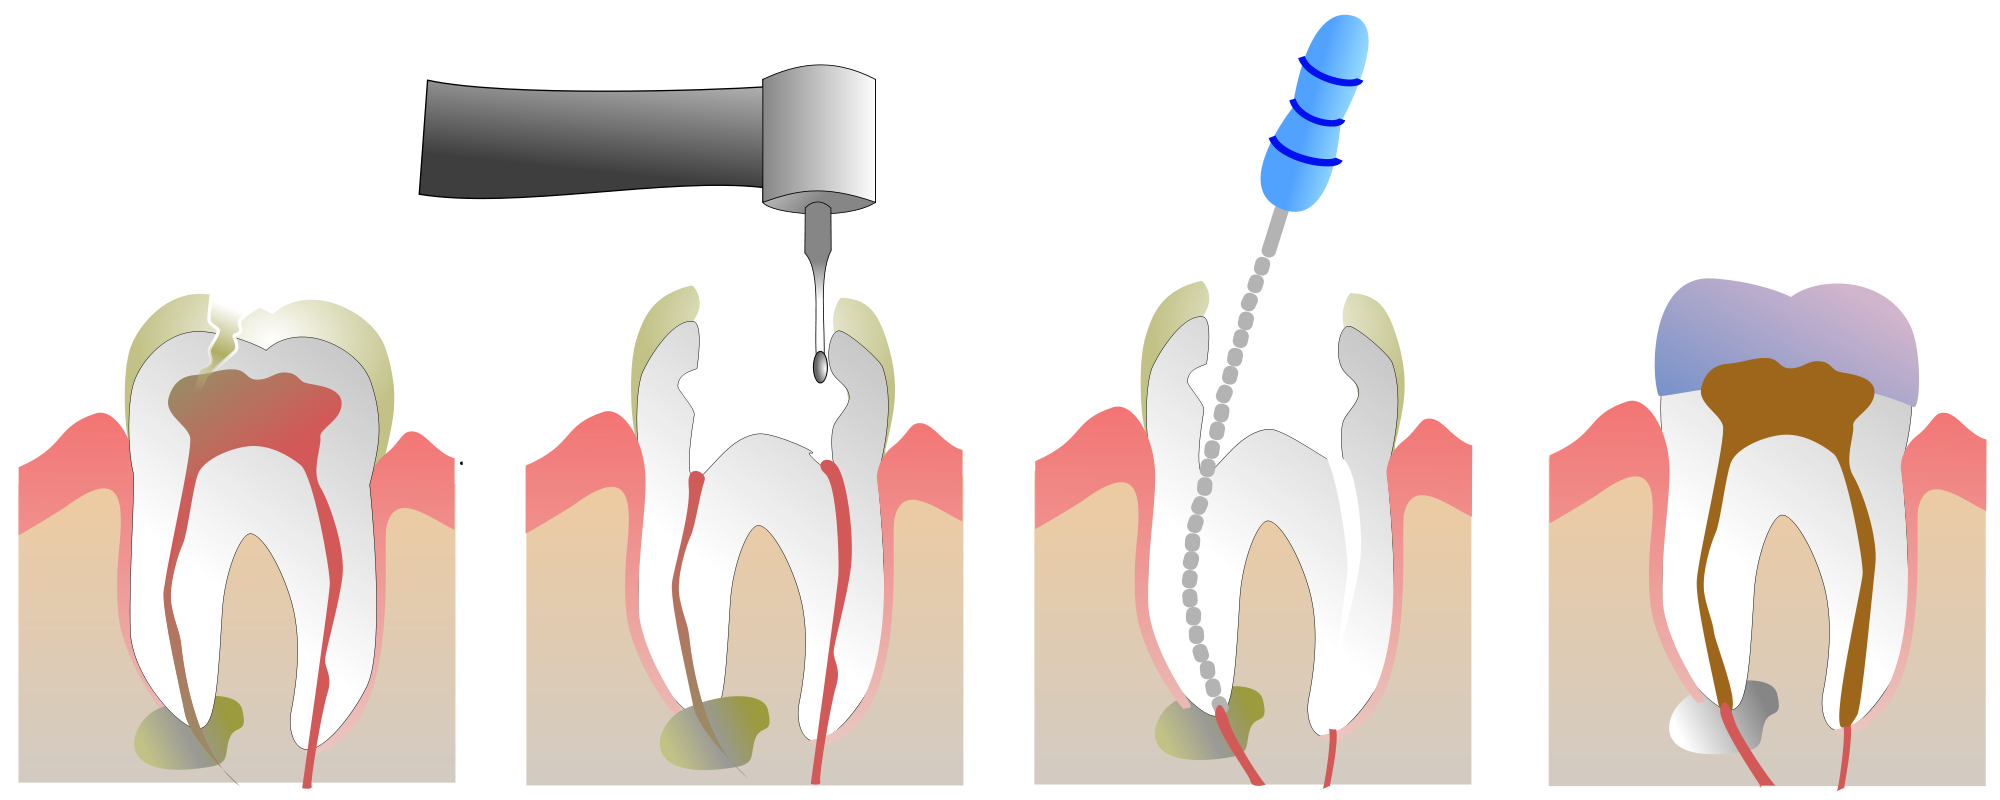 4 Канальный пульпит зуба. Пульпит 2 канального зуба. Периодонтит 1 канальный. Пломбирование зуба после лечения каналов